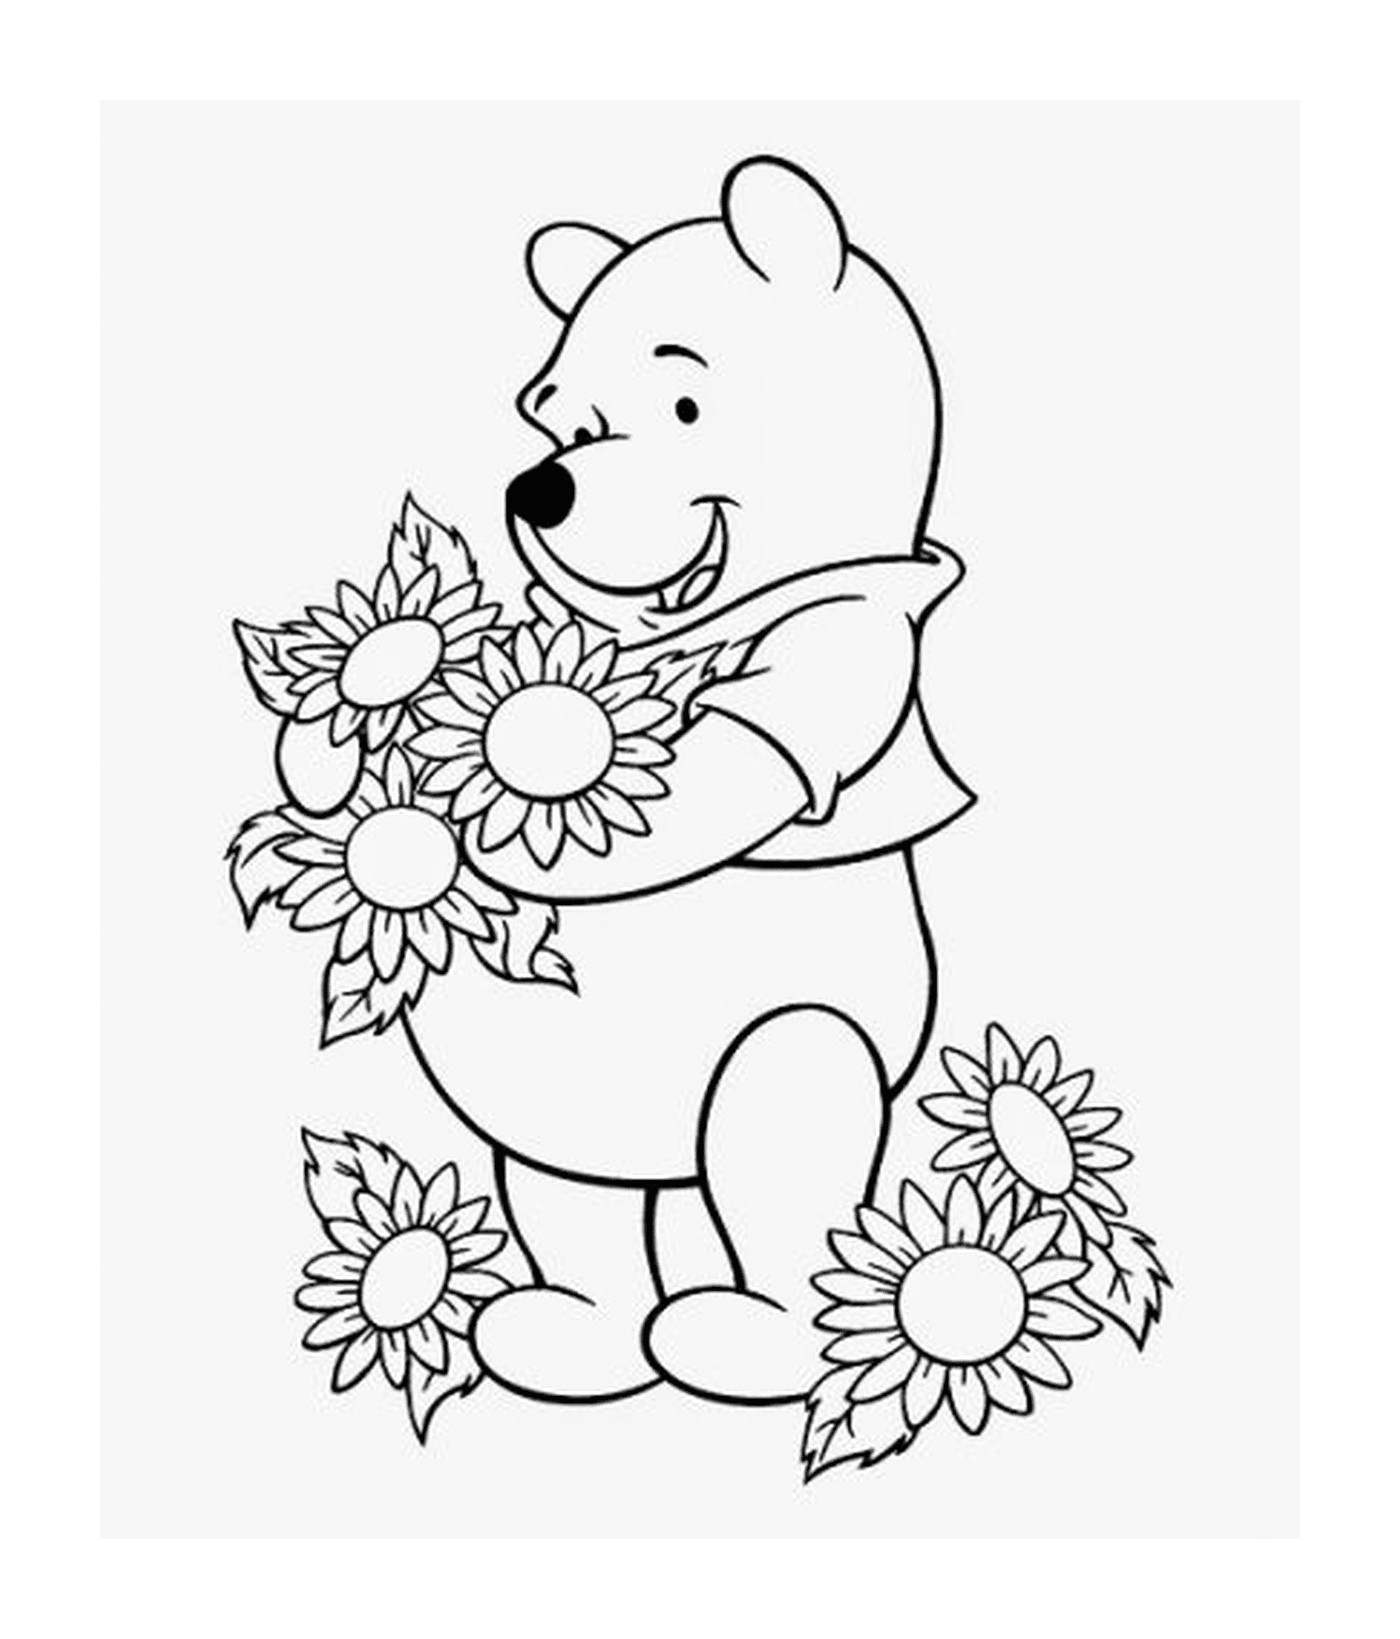  Winnie el oso ama las flores 